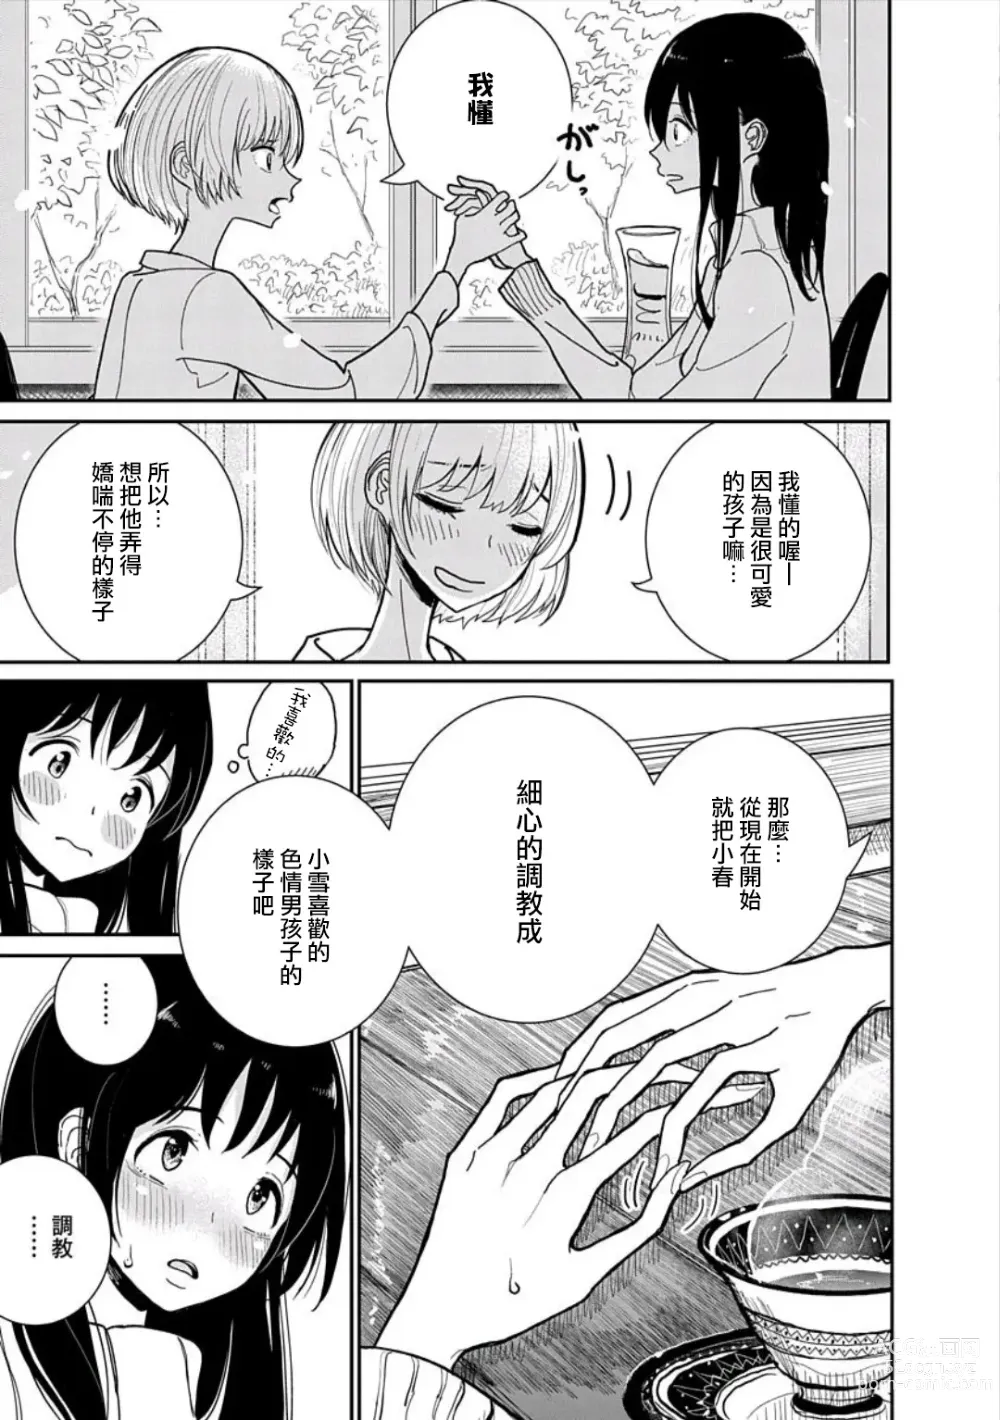 Page 12 of manga 在你嬌聲求我之前